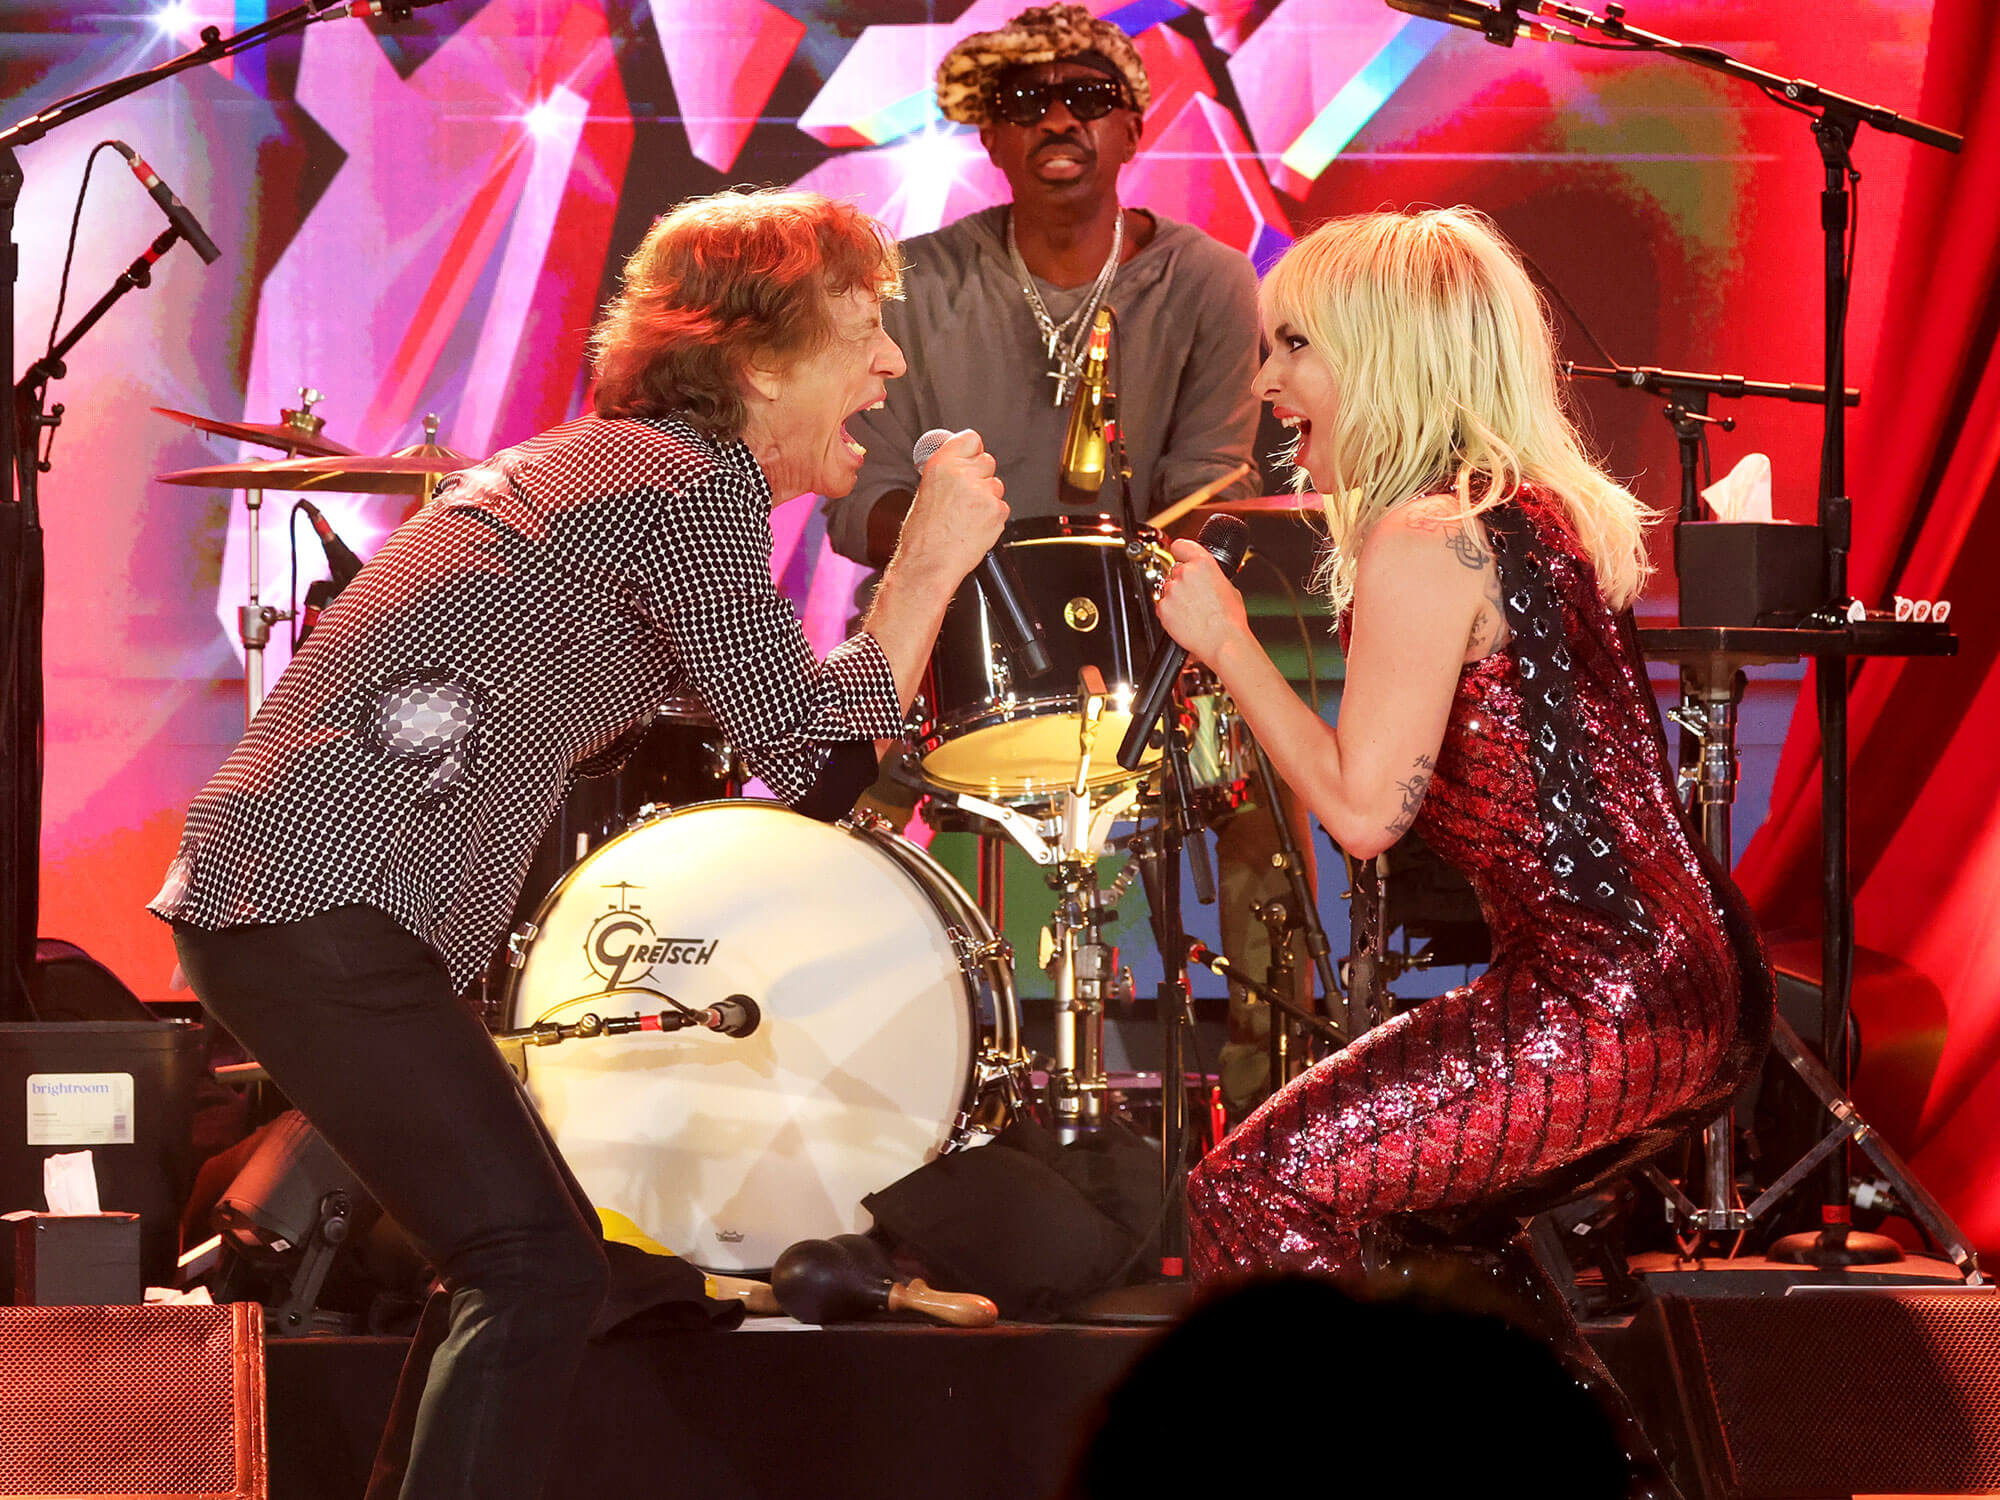 [L-R] Mick Jagger and Lady Gaga